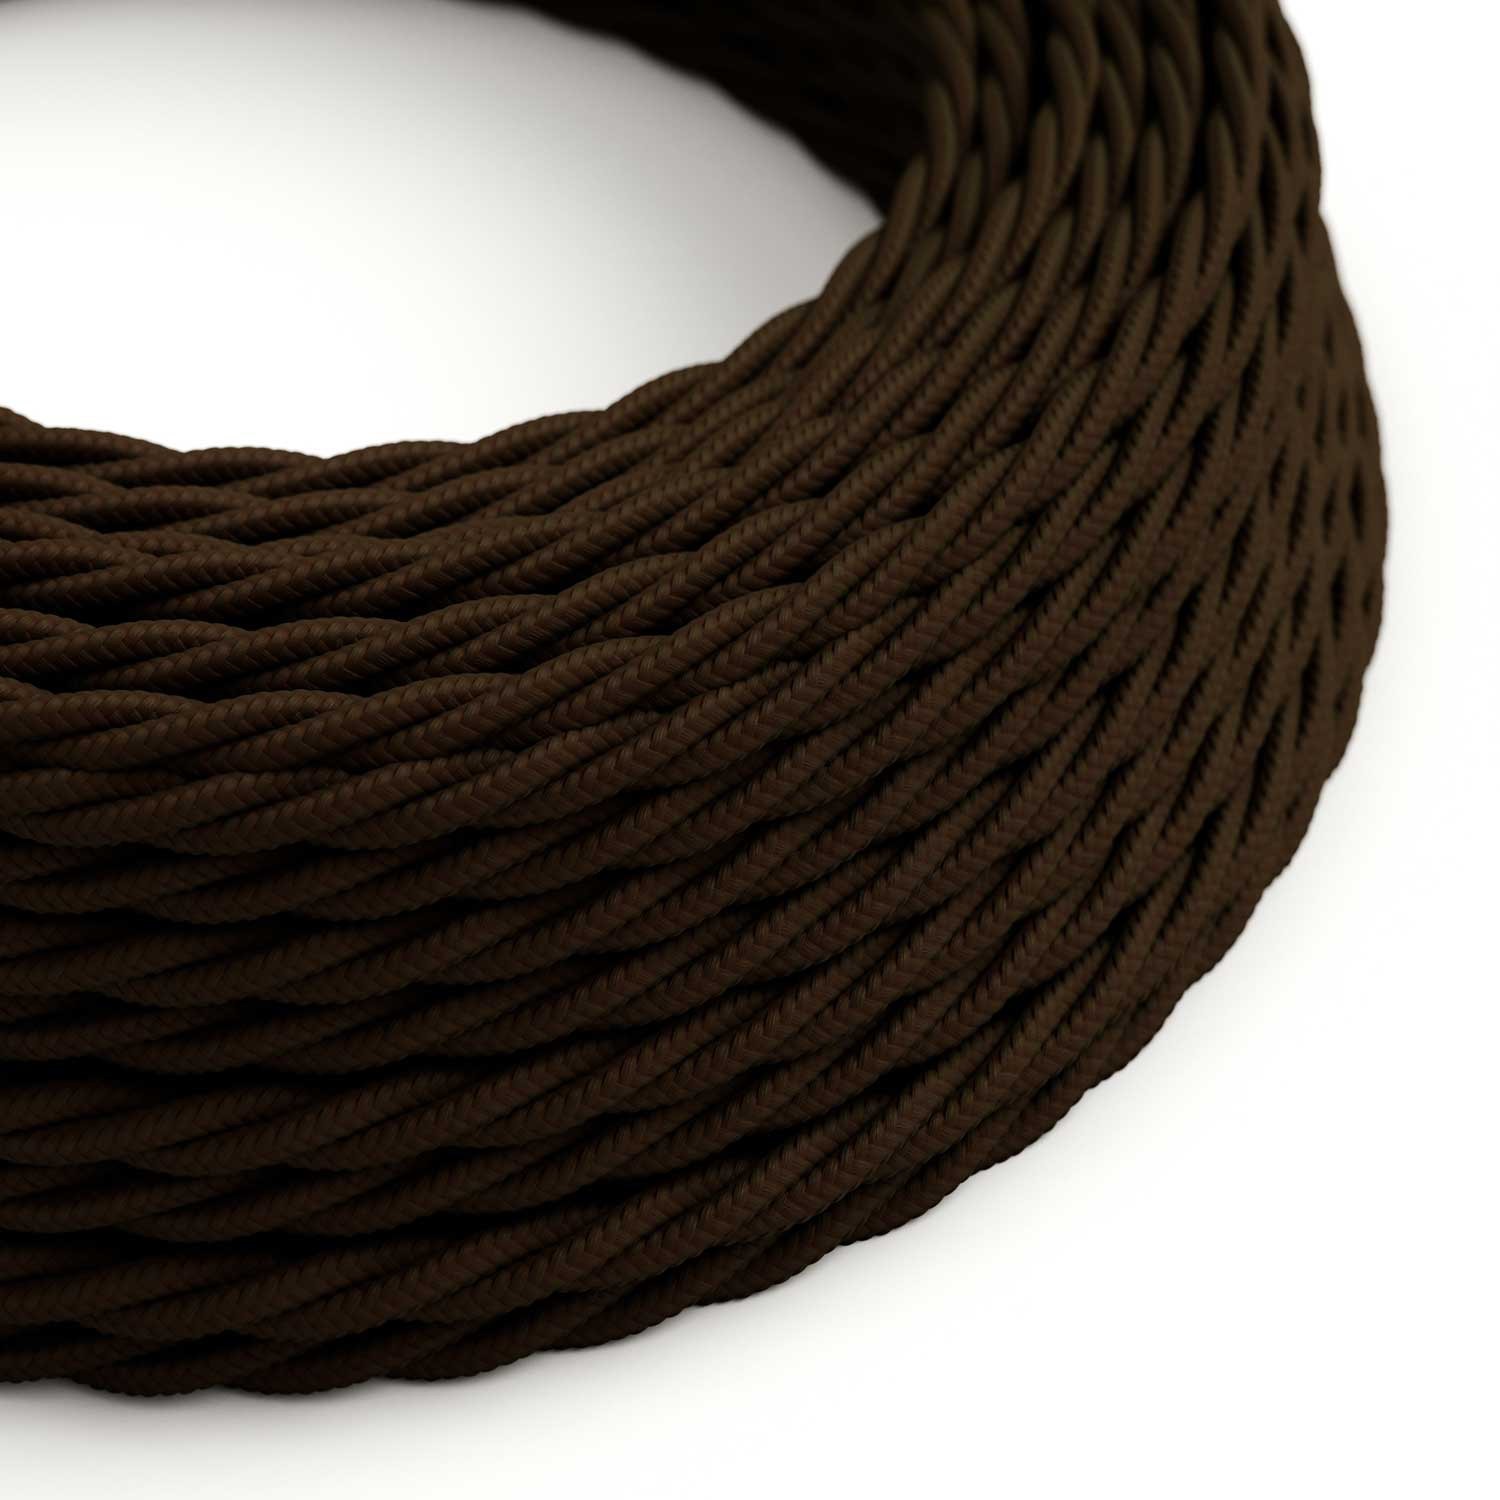 Textilkabel, kaffeebraun glänzend Textilkabel - Das Original von Creative-Cables - TM13 geflochten 2x0.75mm / 3x0.75mm